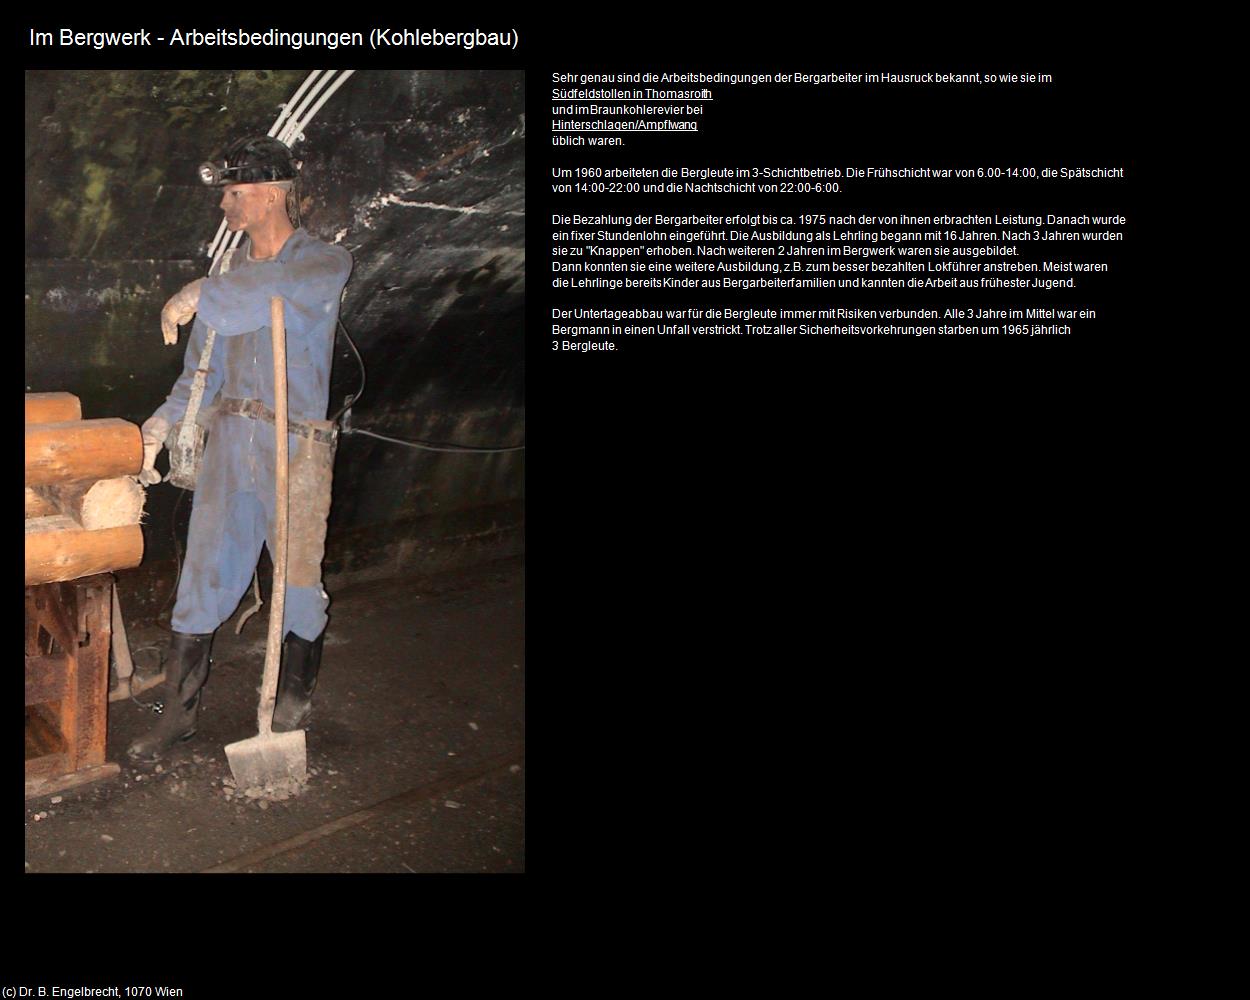 Im Bergwerk - Arbeitsbedingungen (Hinterschlagen/Ampflwang) in Kulturatlas-OBERÖSTERREICH(c)B.Engelbrecht